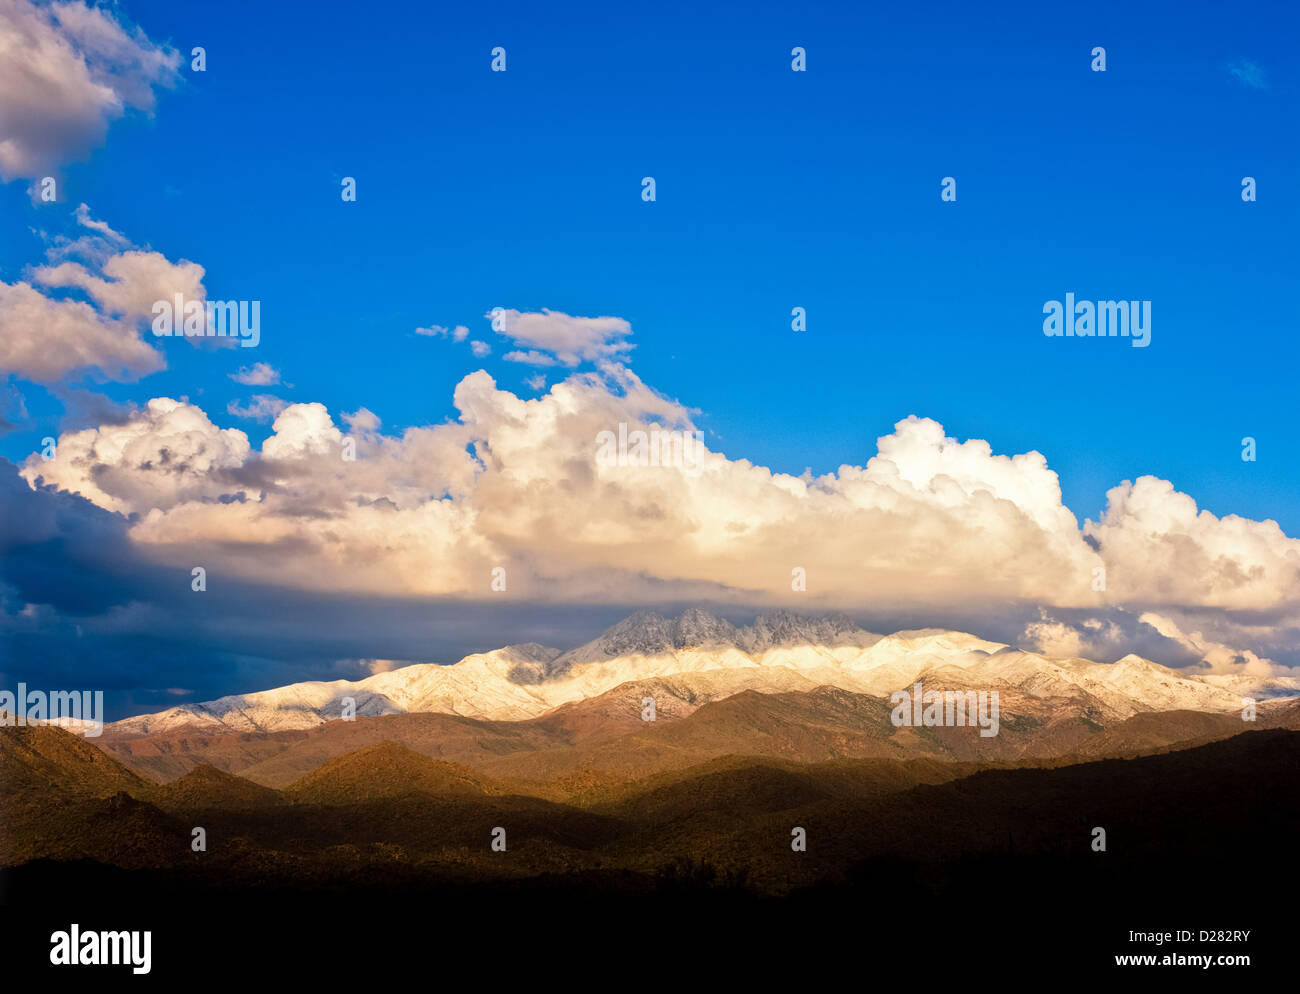 Mazatzal montagne, Tonto National Forest, AZ. Stati Uniti d'America "Quattro picchi' quattro cime delle montagne. Foto Stock